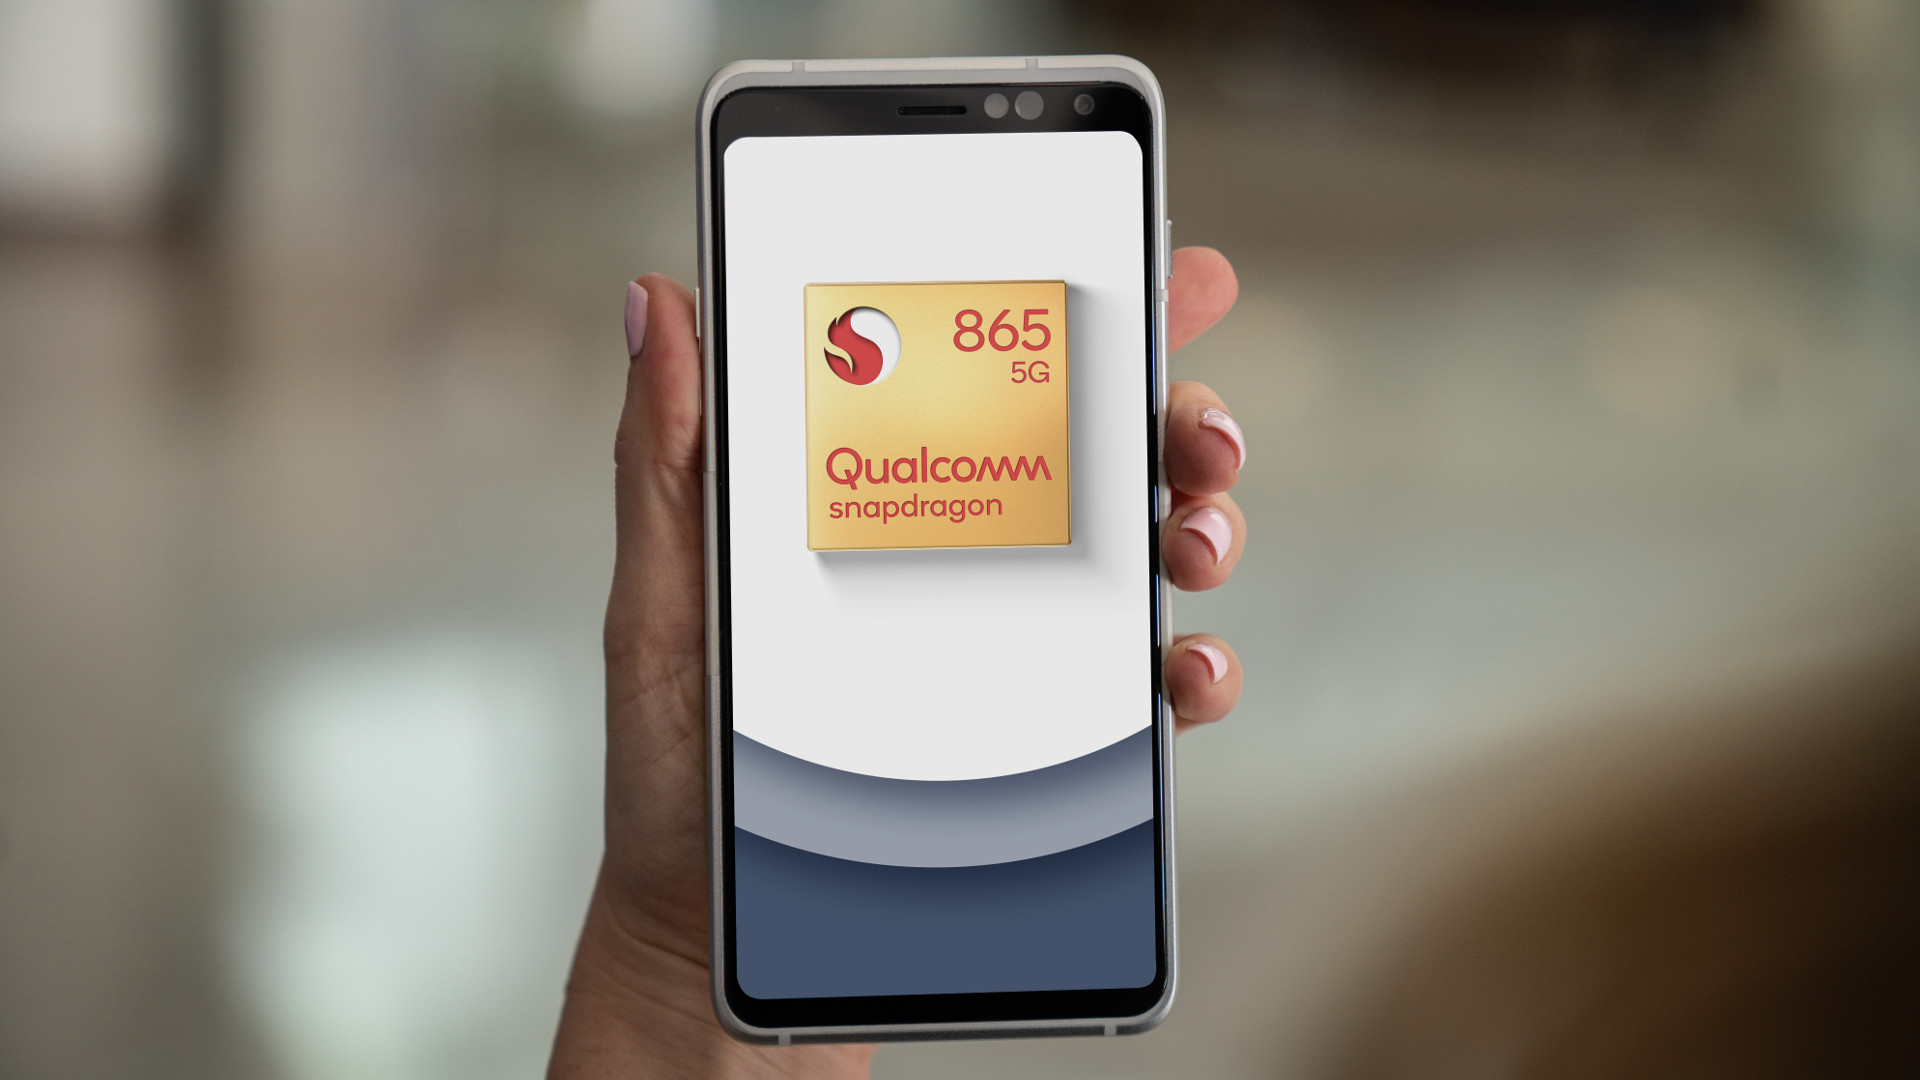 Qualcomm Snapdragon 865 5G Mobile Platform Reference Design In Hand